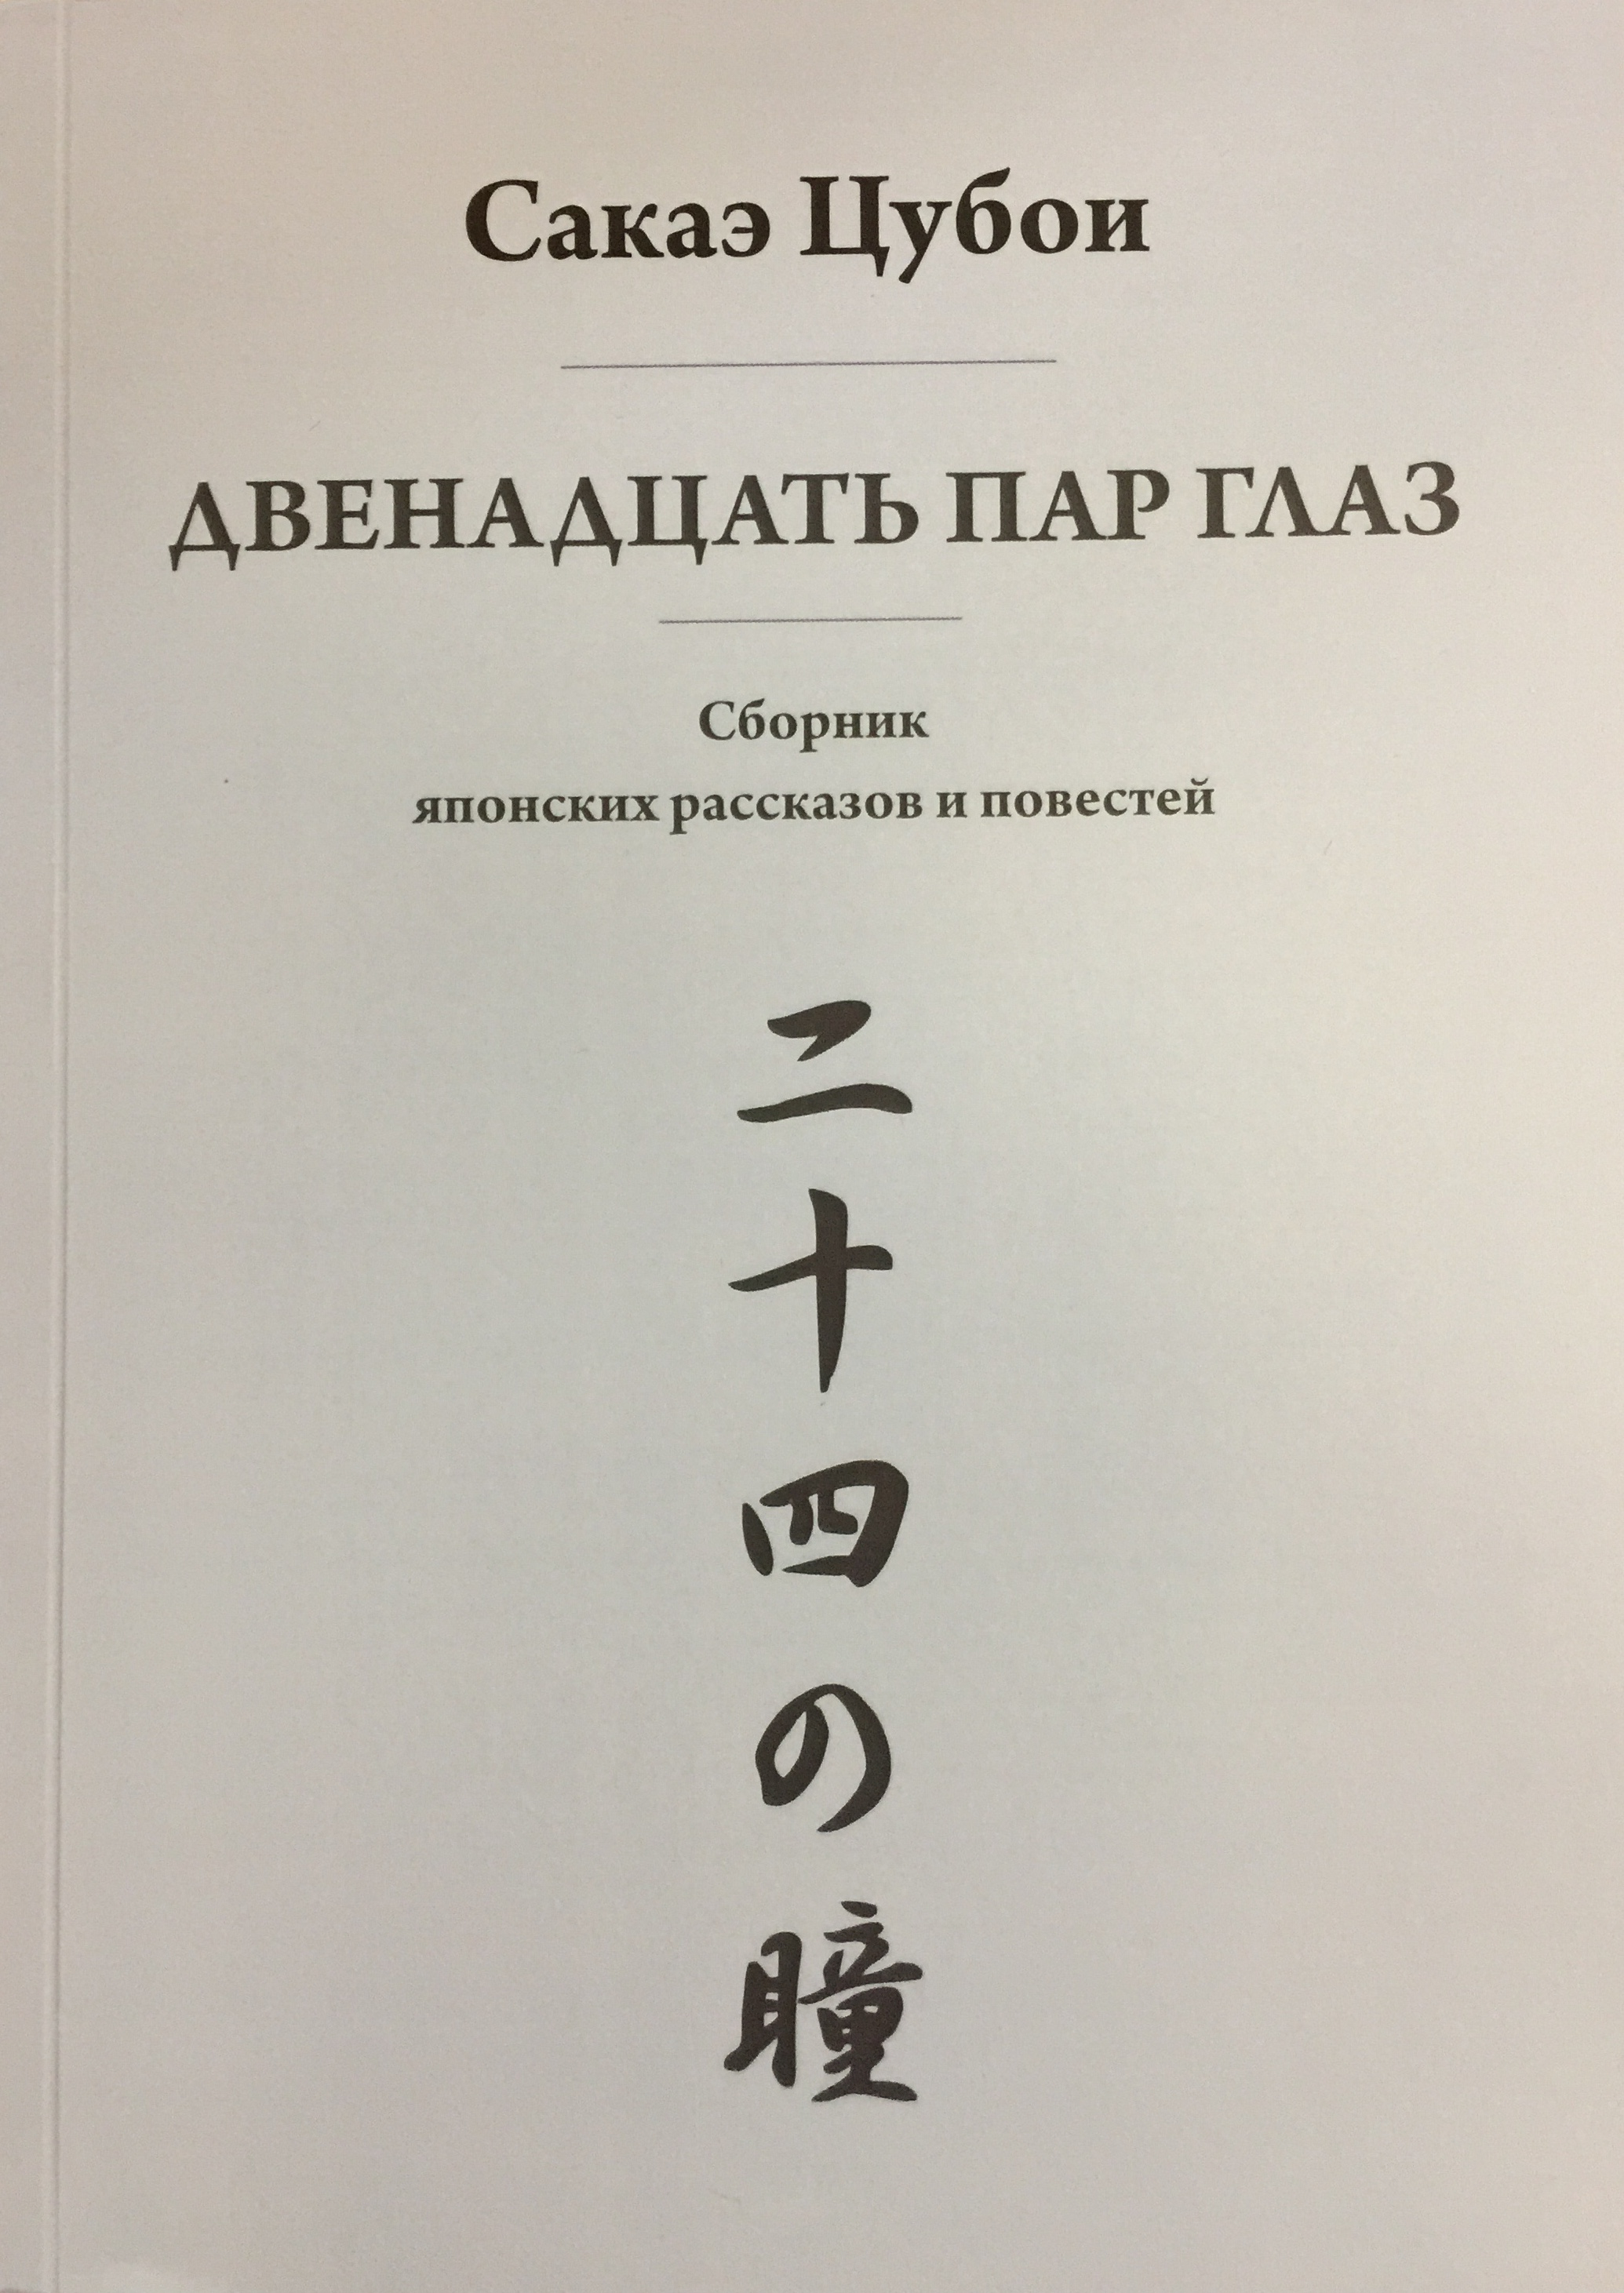 Двенадцать пар глаз: сборник японских рассказов и повестей / Сакаэ Цубои / Минск: Колорград, 2022.